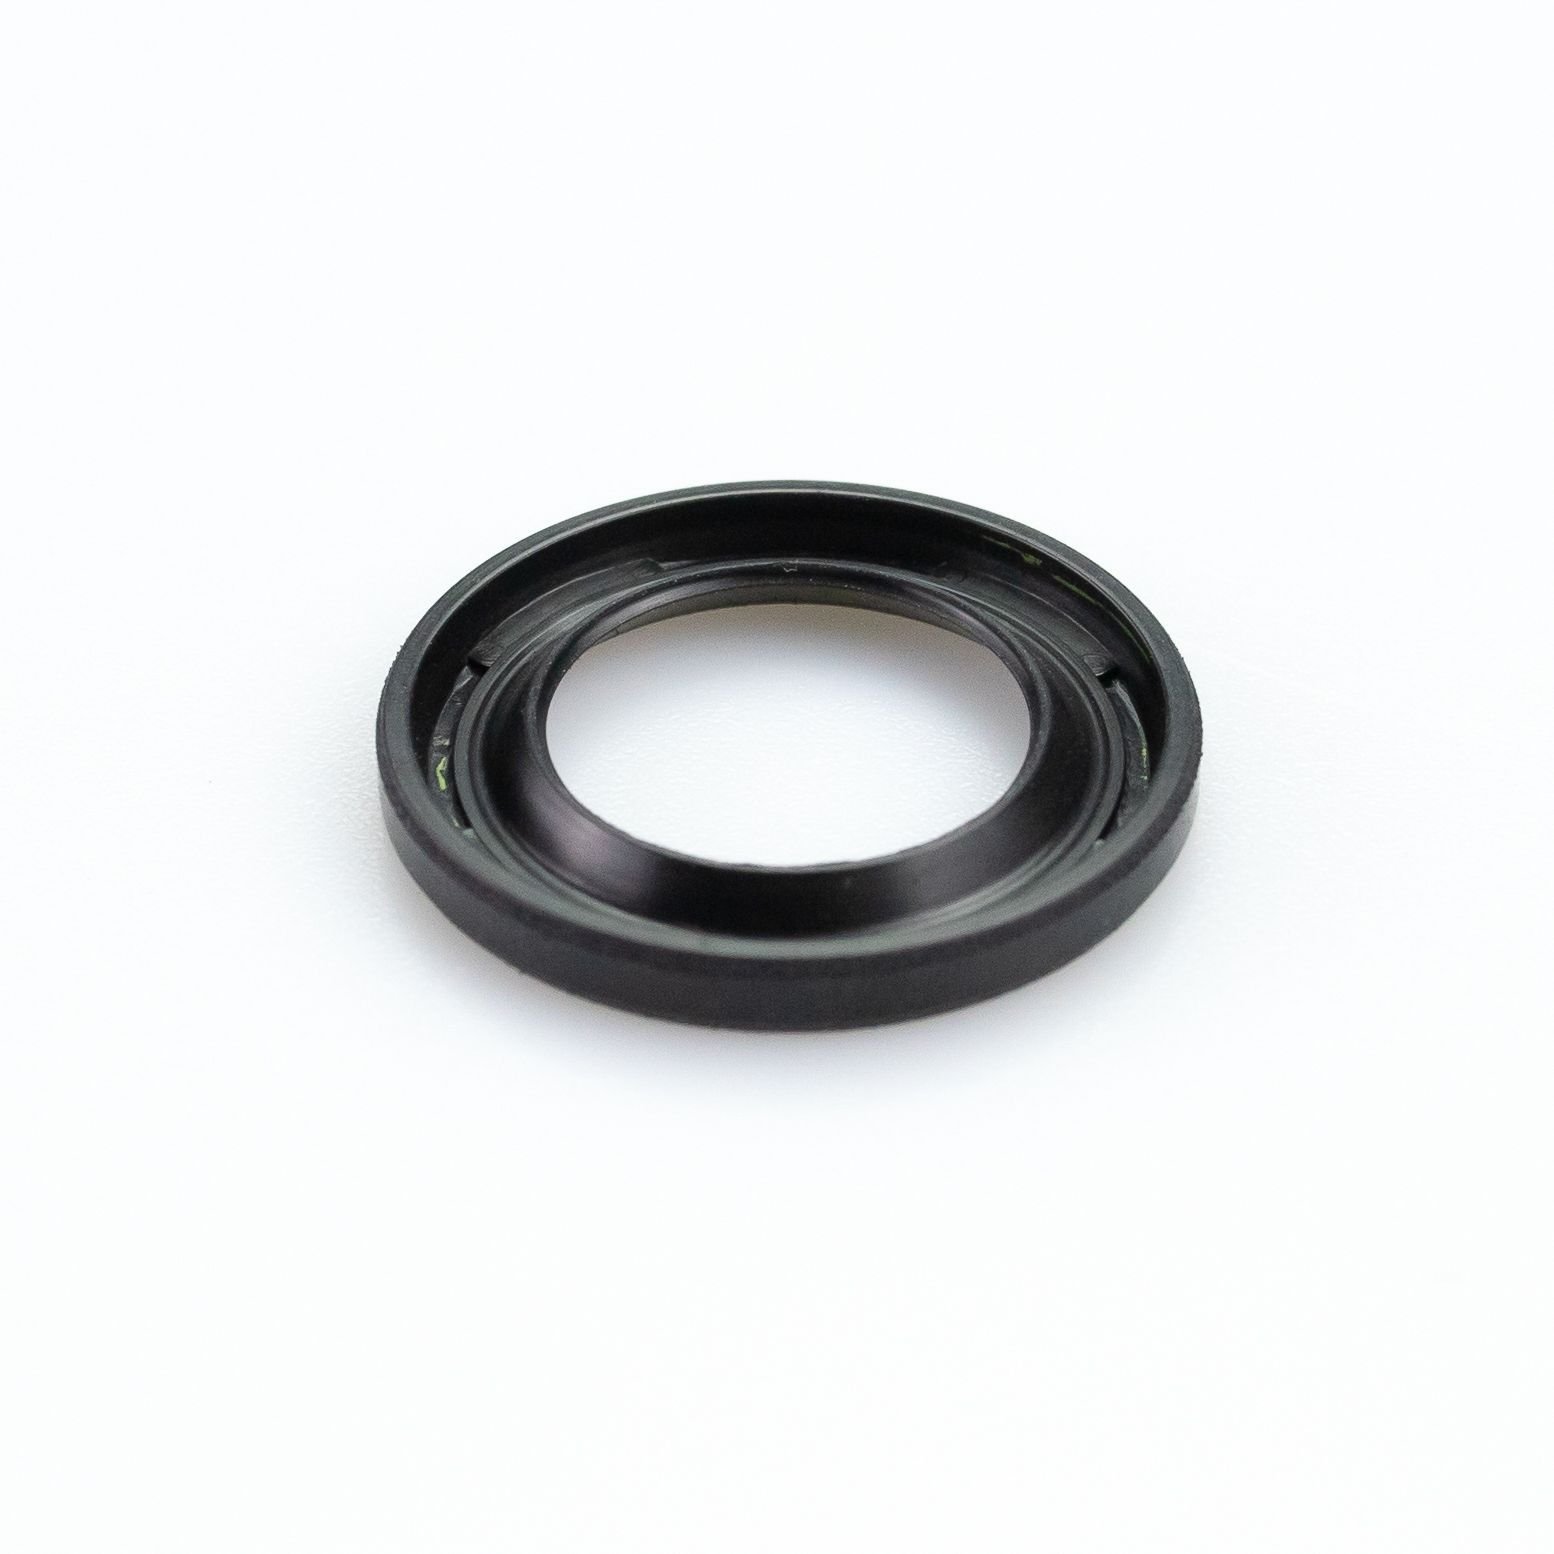 Obrázek produktu RCU bearing body KYB 120030000401 Stírací kroužky levý